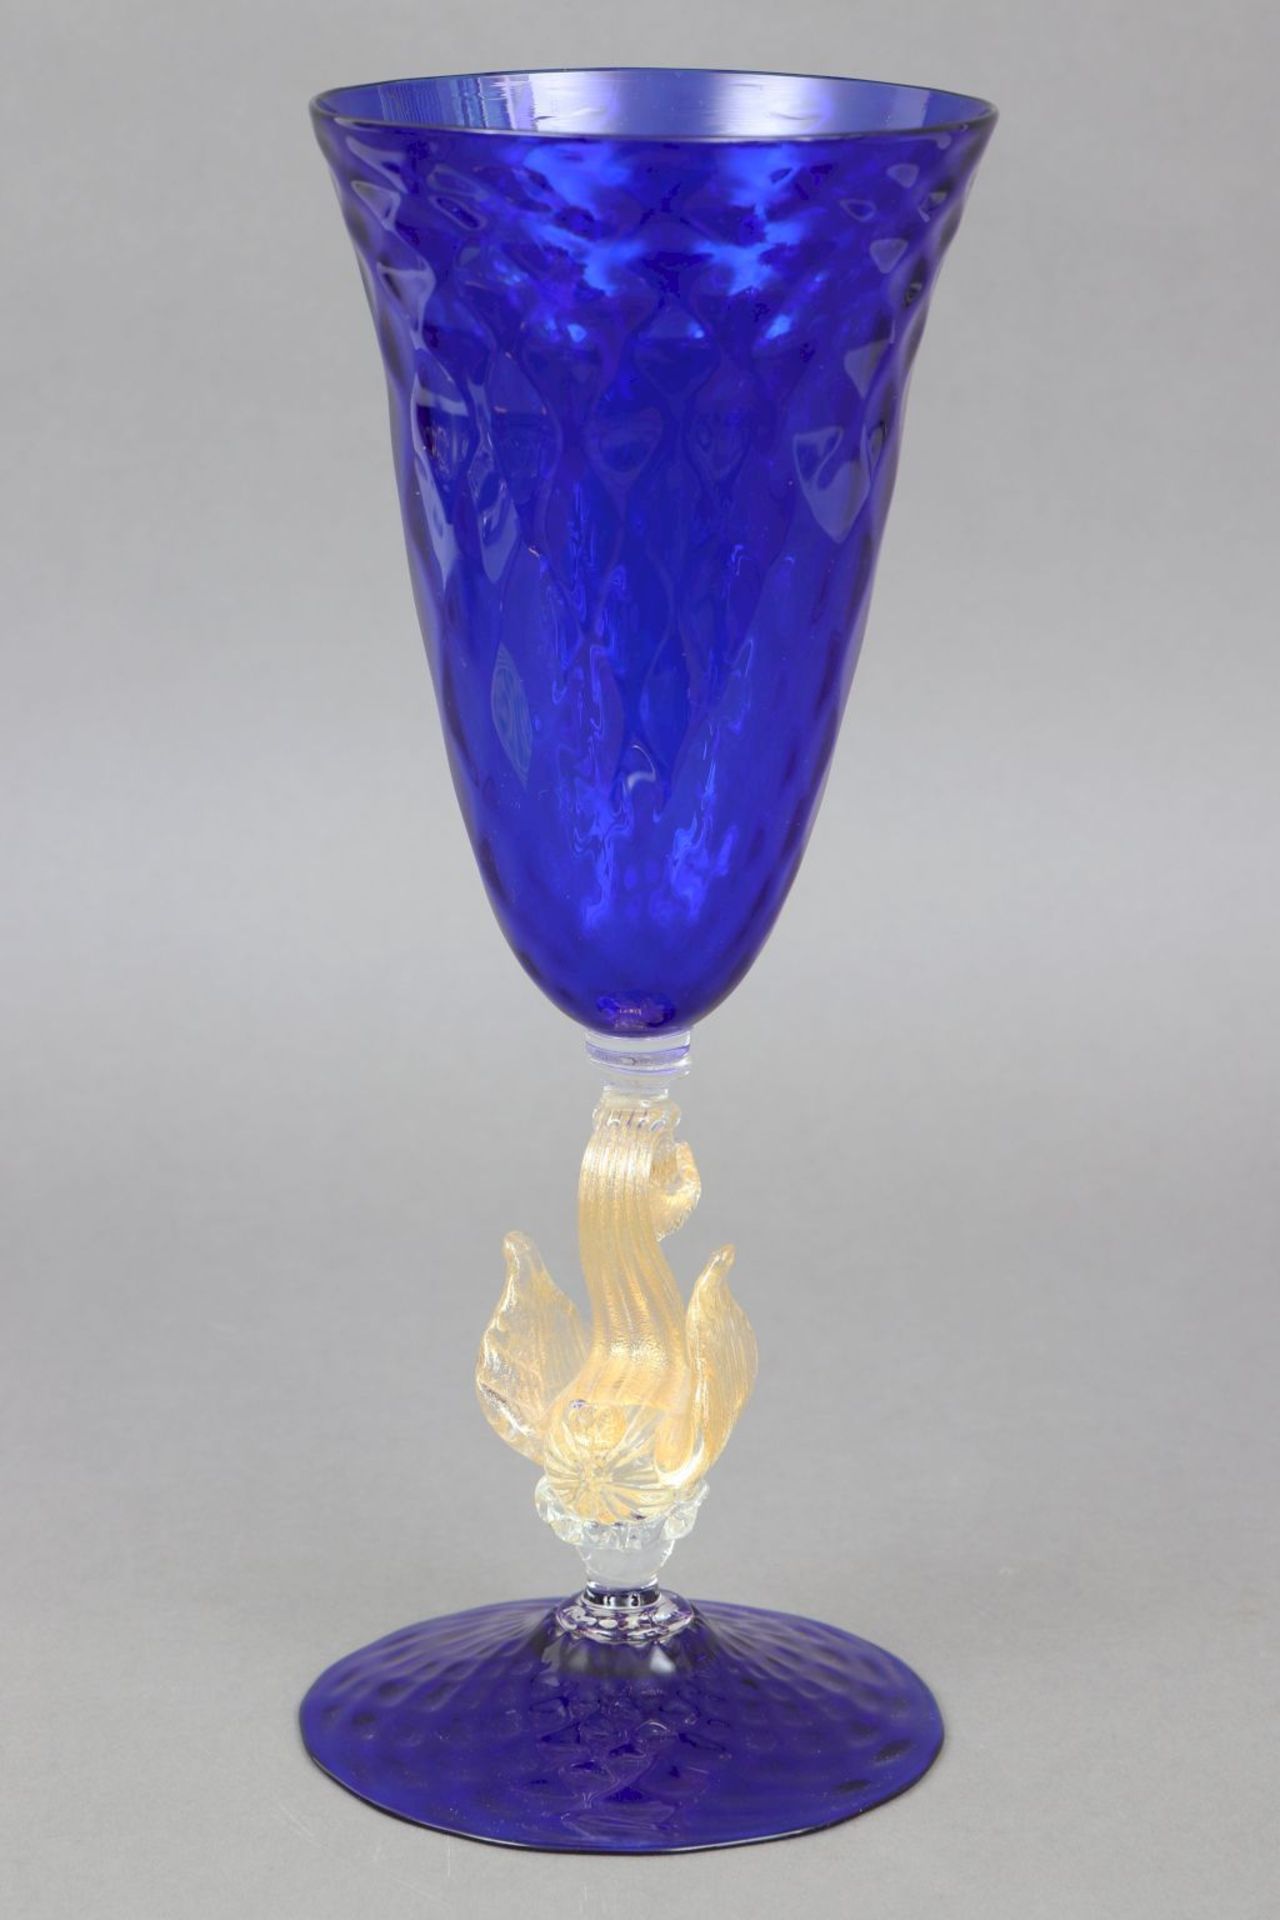 Venezianisches Kelchglas im Stile des Barock - Bild 2 aus 3